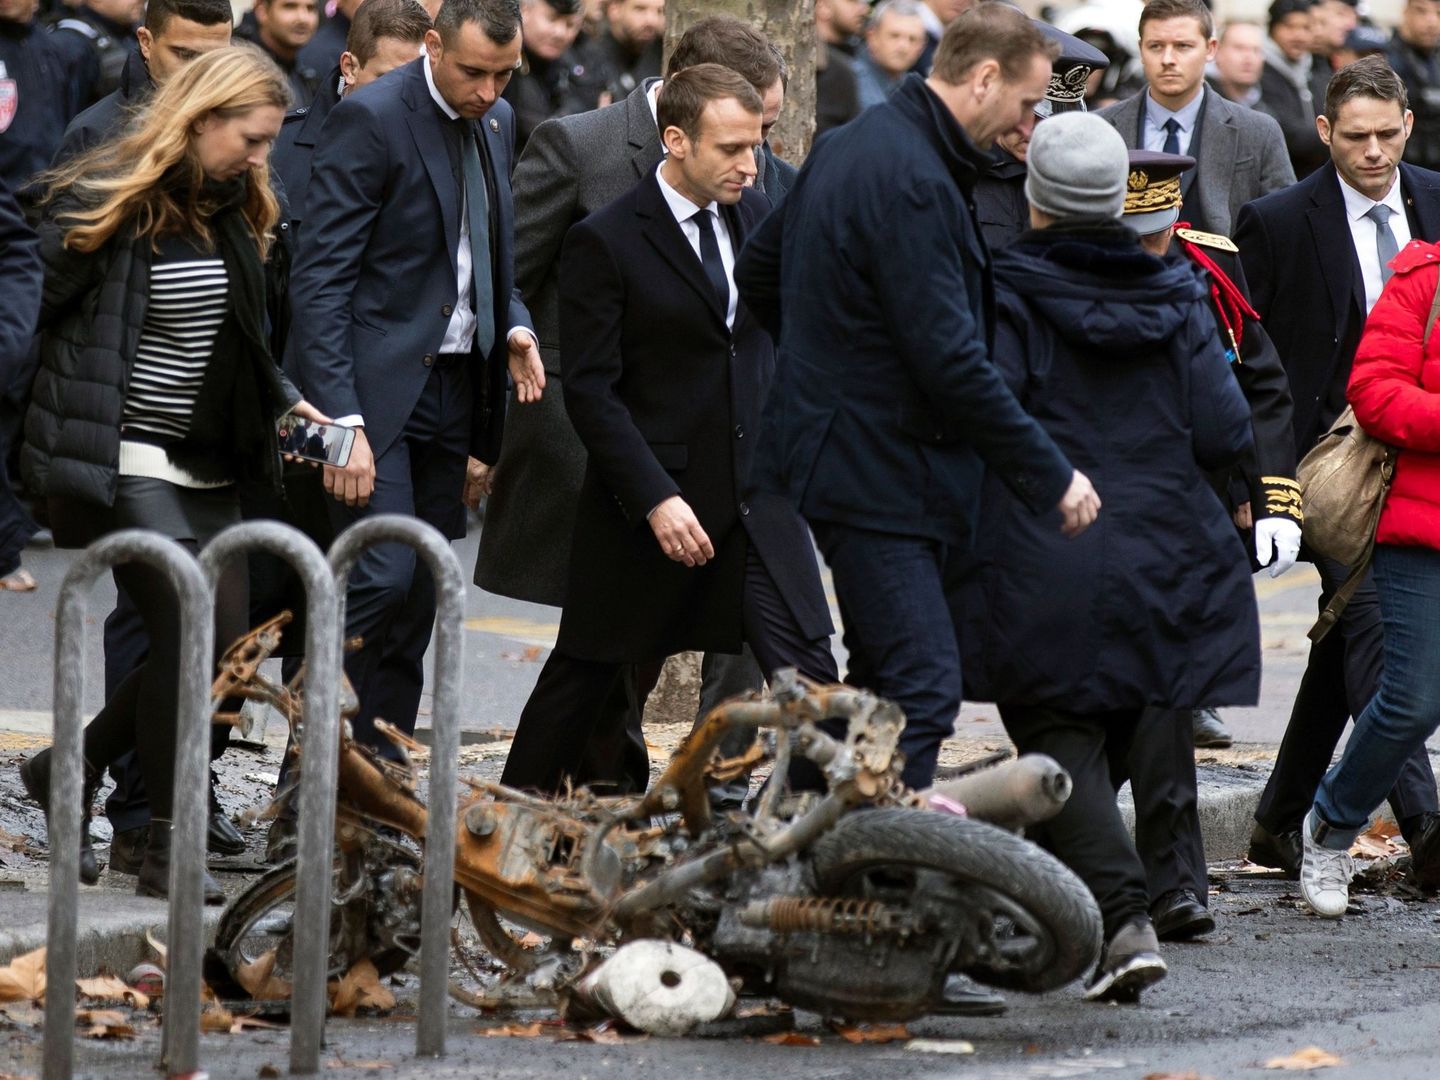 El presidente francés, Emmanuel macron, pasa junto a una motocicleta calcinada mientras comprueba personalmente los daños materiales ocasionados en las protestas, el 2 de diciembre de 2018. (EFE)